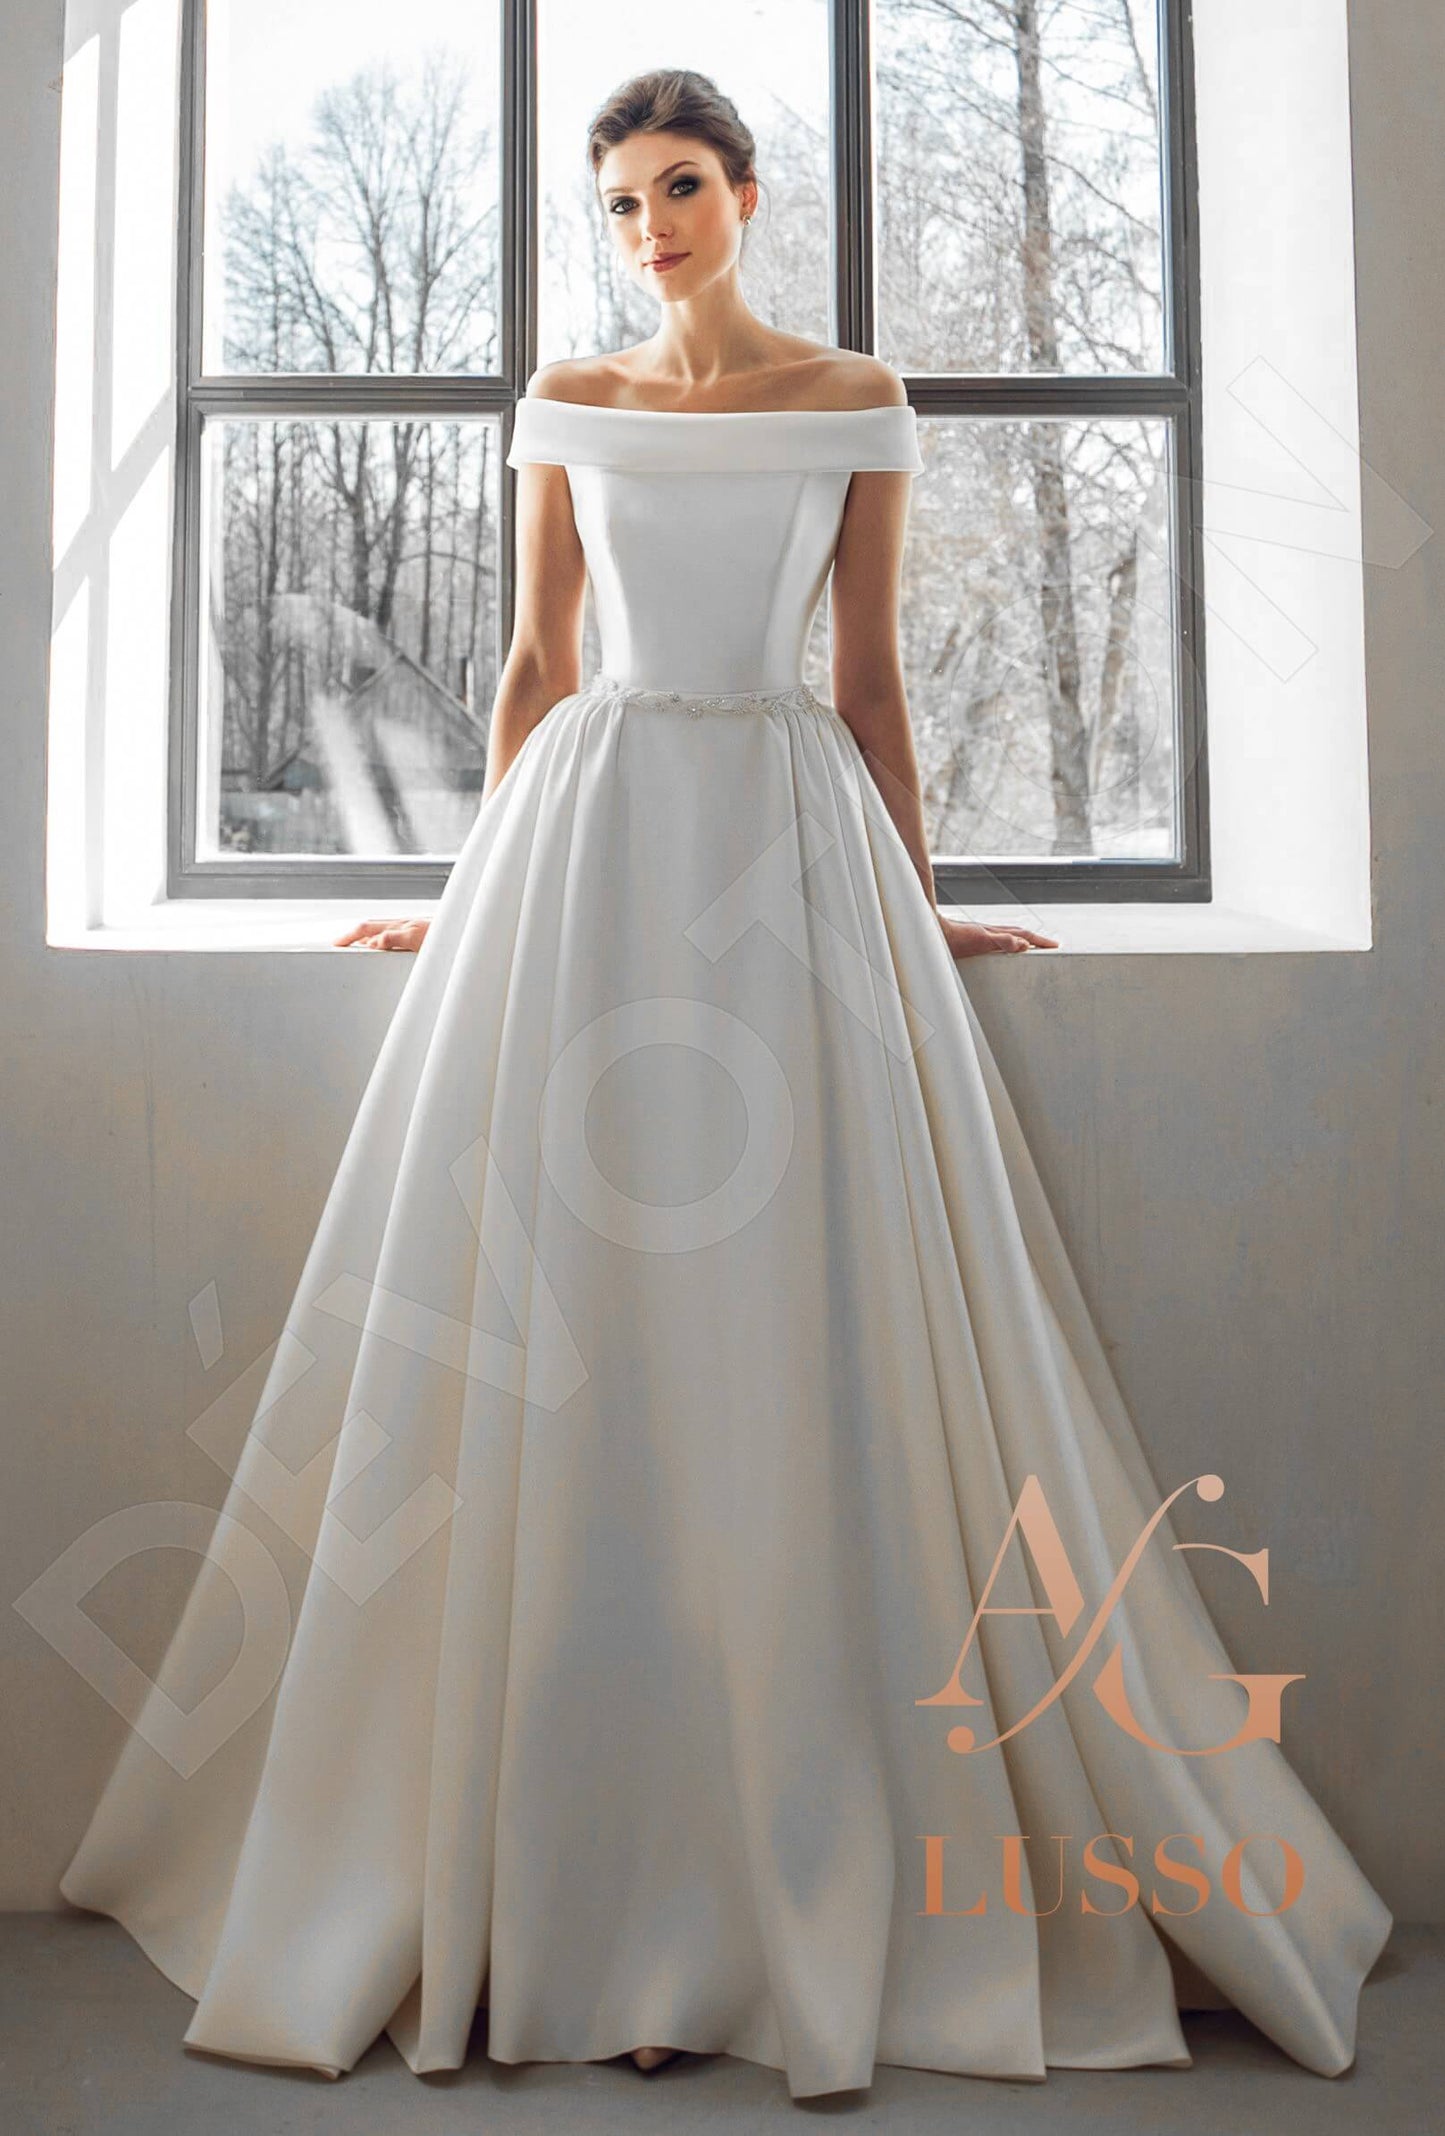 Corsa Open back A-line Sleeveless Wedding Dress Front